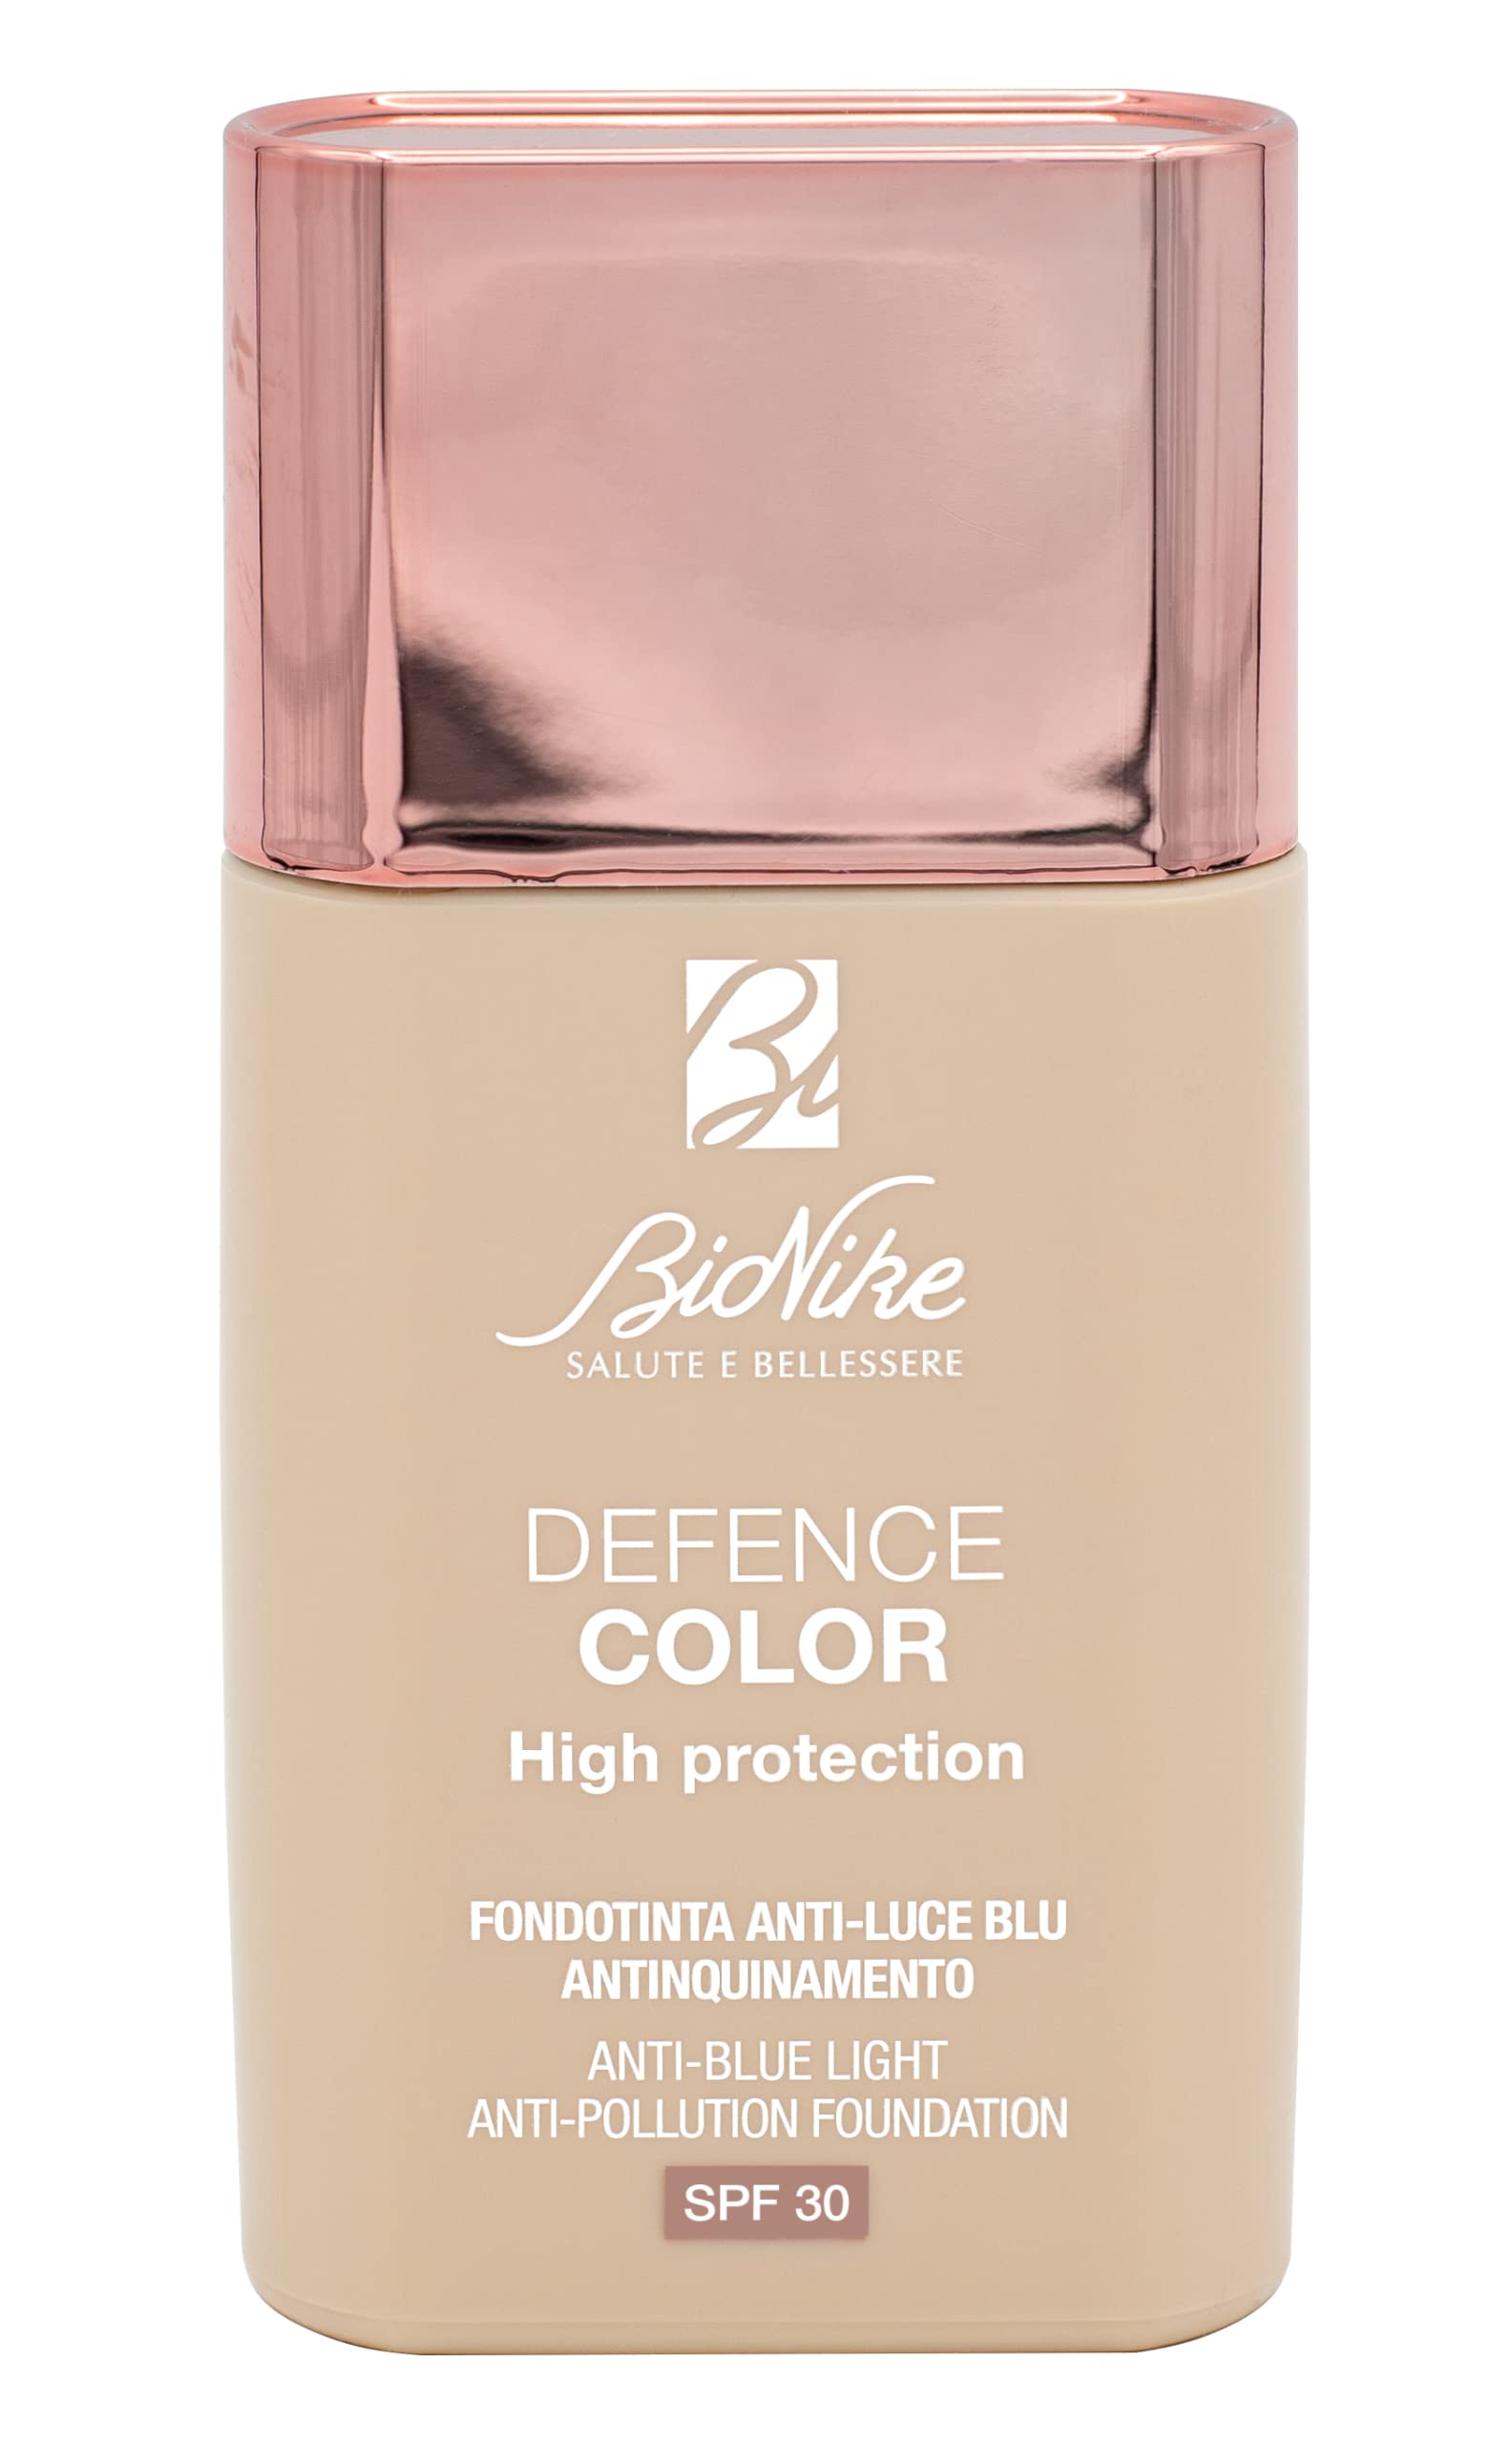 BioNike Defence Color - Fondotinta Protezione Inquinamento Luce Blu N. 302, 30ml